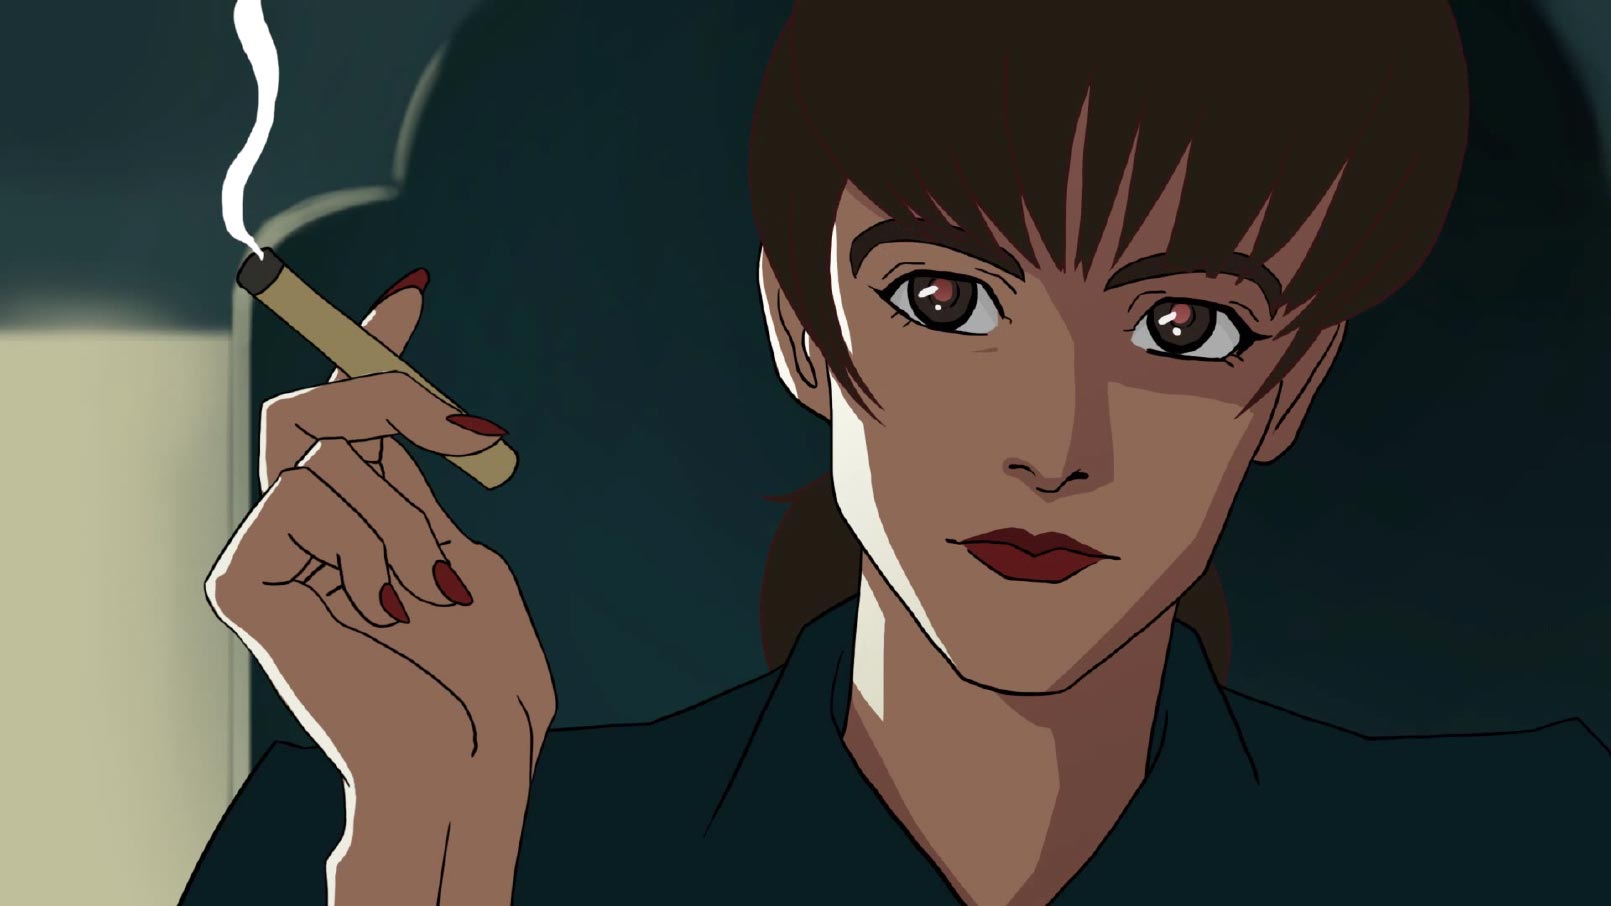 Blade Runner Anime Series Being Developed